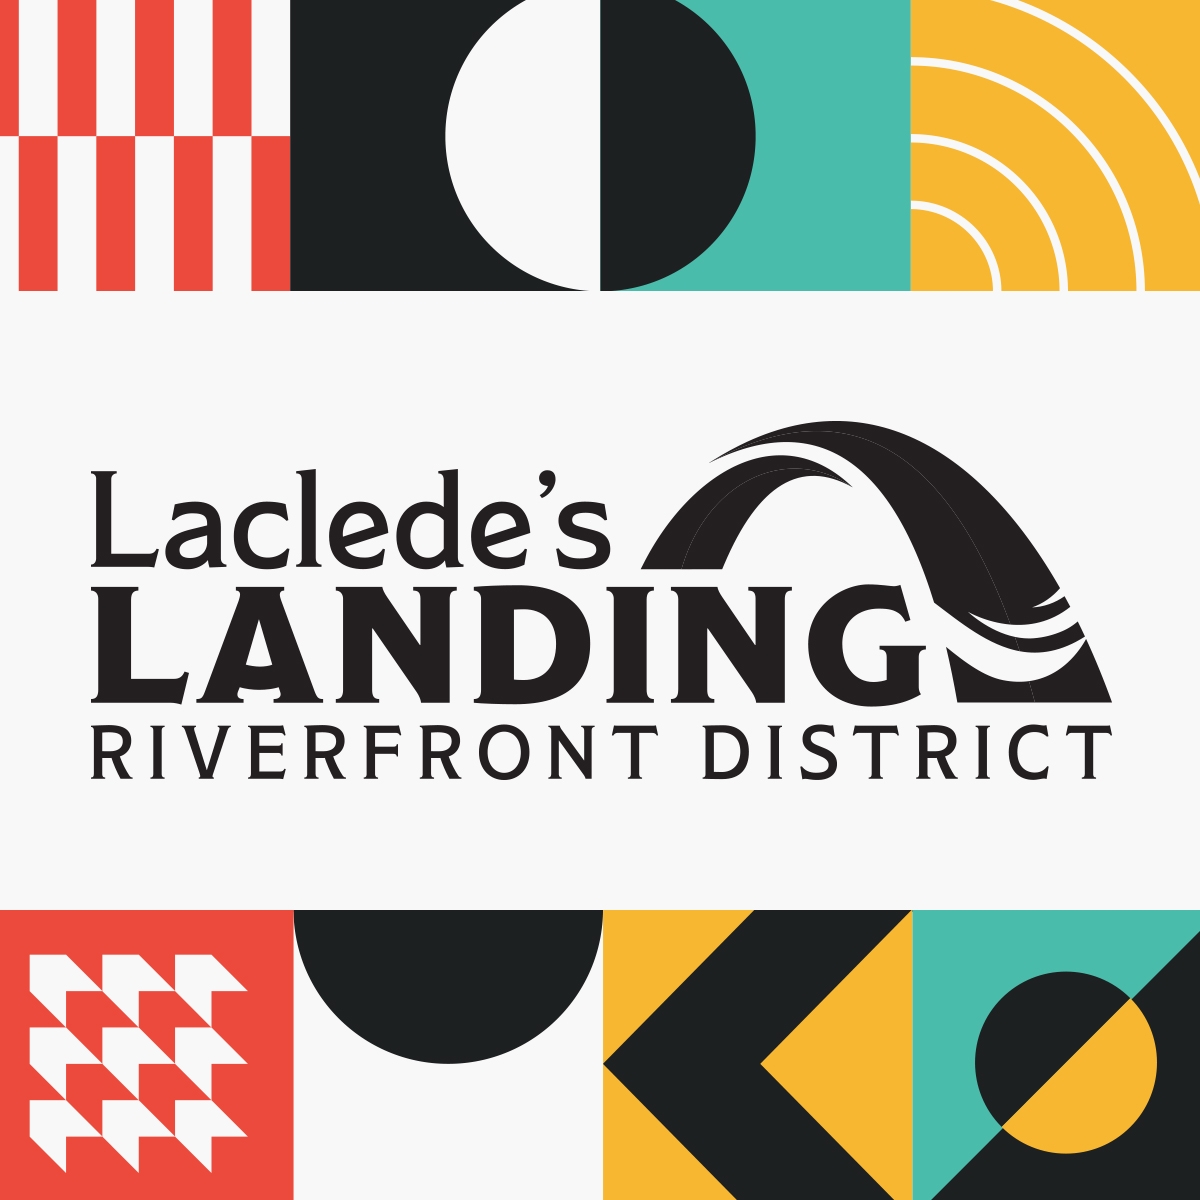 Laclede's Landing Riverfront District